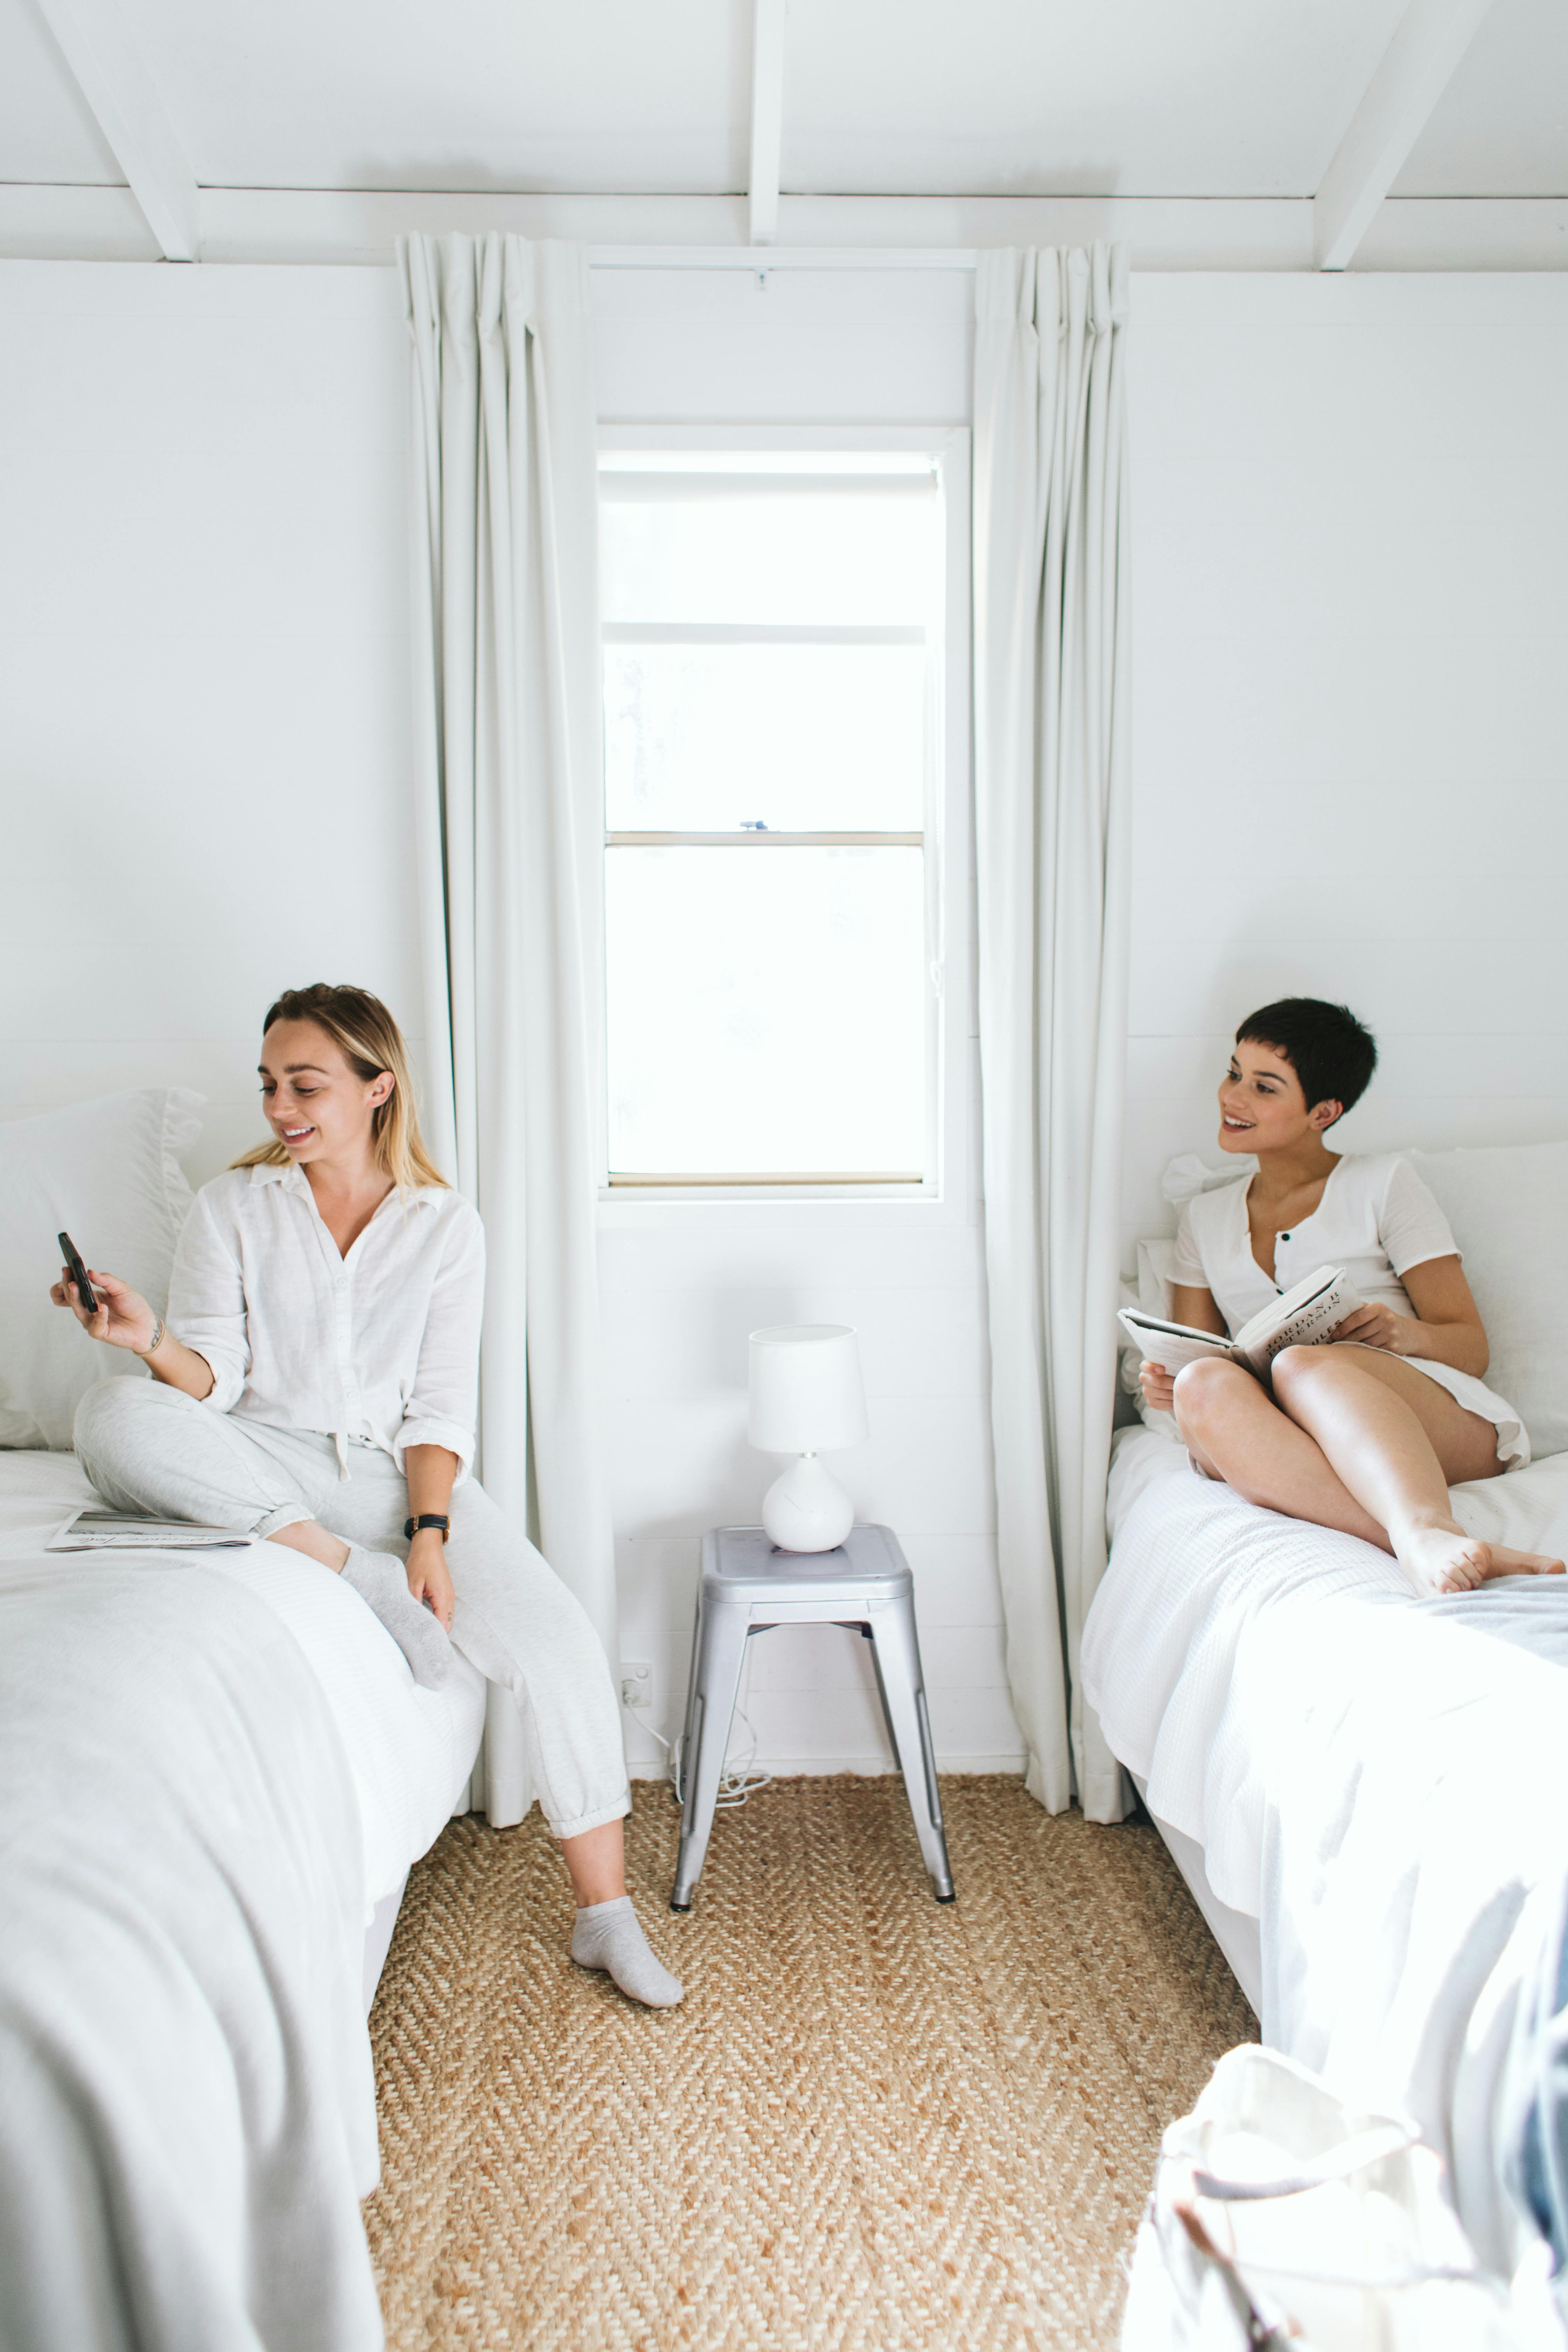 Dos mujeres sentadas en camas individuales | Foto: Pexels